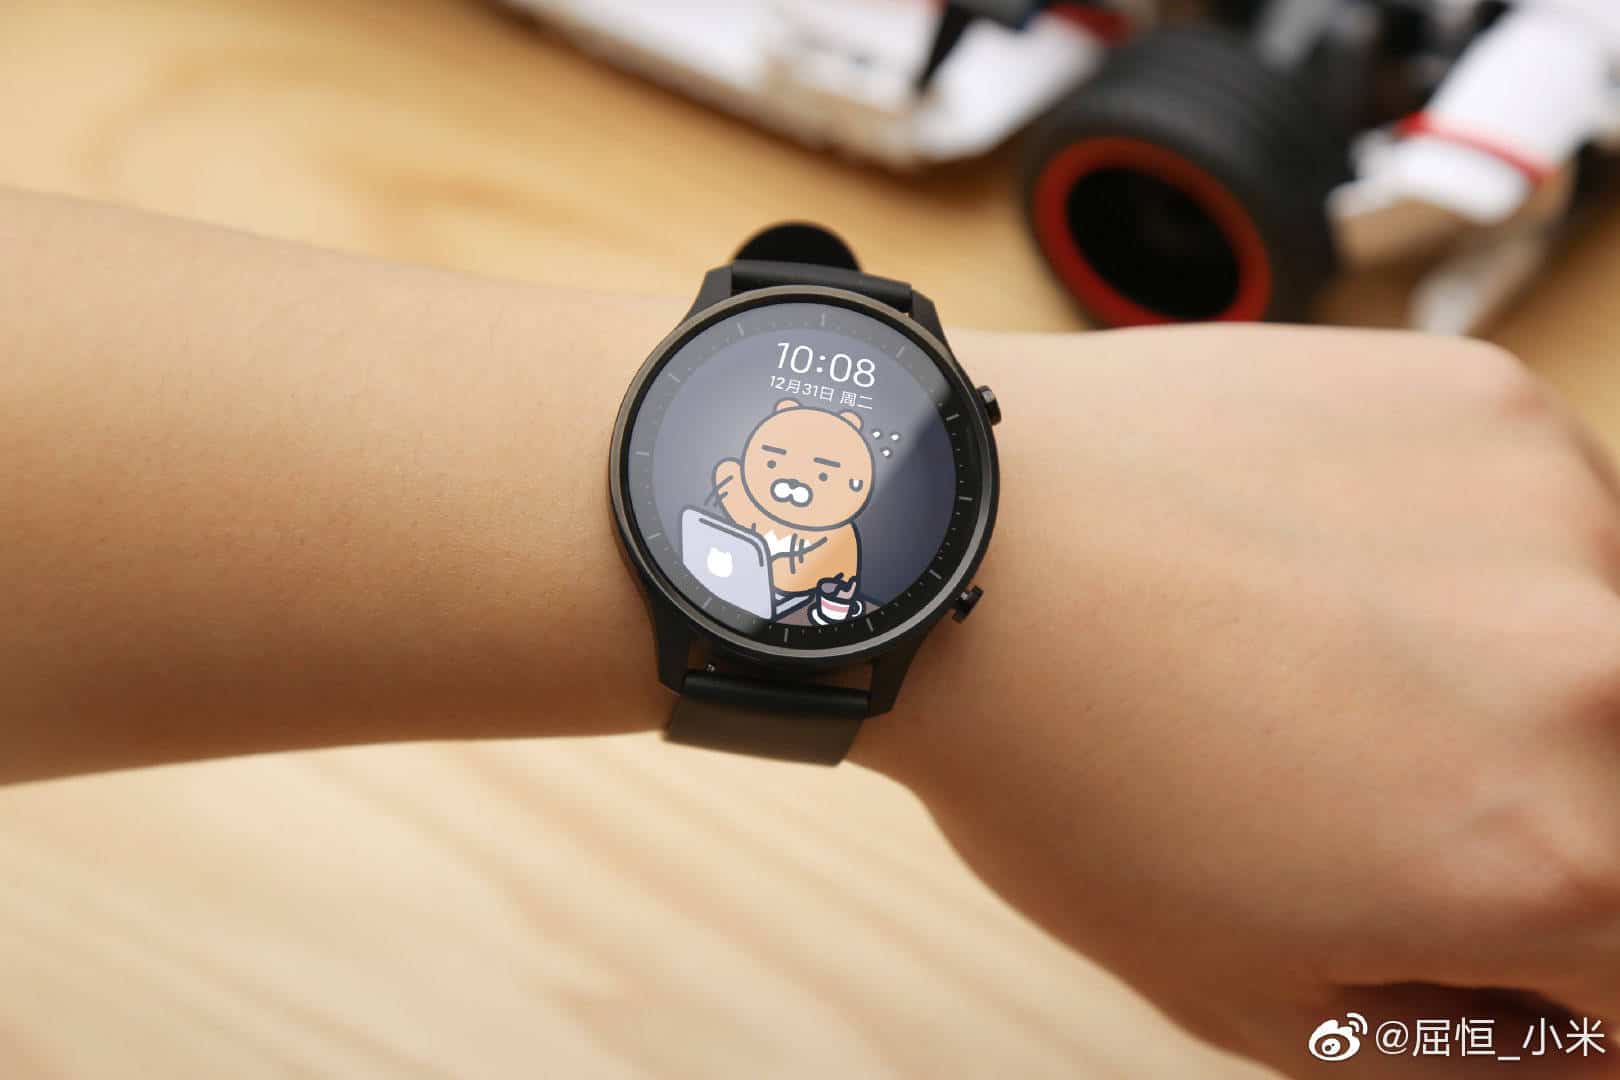 К началу нового учебного года компания Xiaomi выпустила новую модель детских GPS-часов Xiaoxun Children Smartwatch S2 Это улучшенная версия Children Smartwatch S2 представленных в начале в начале августа прошлого года